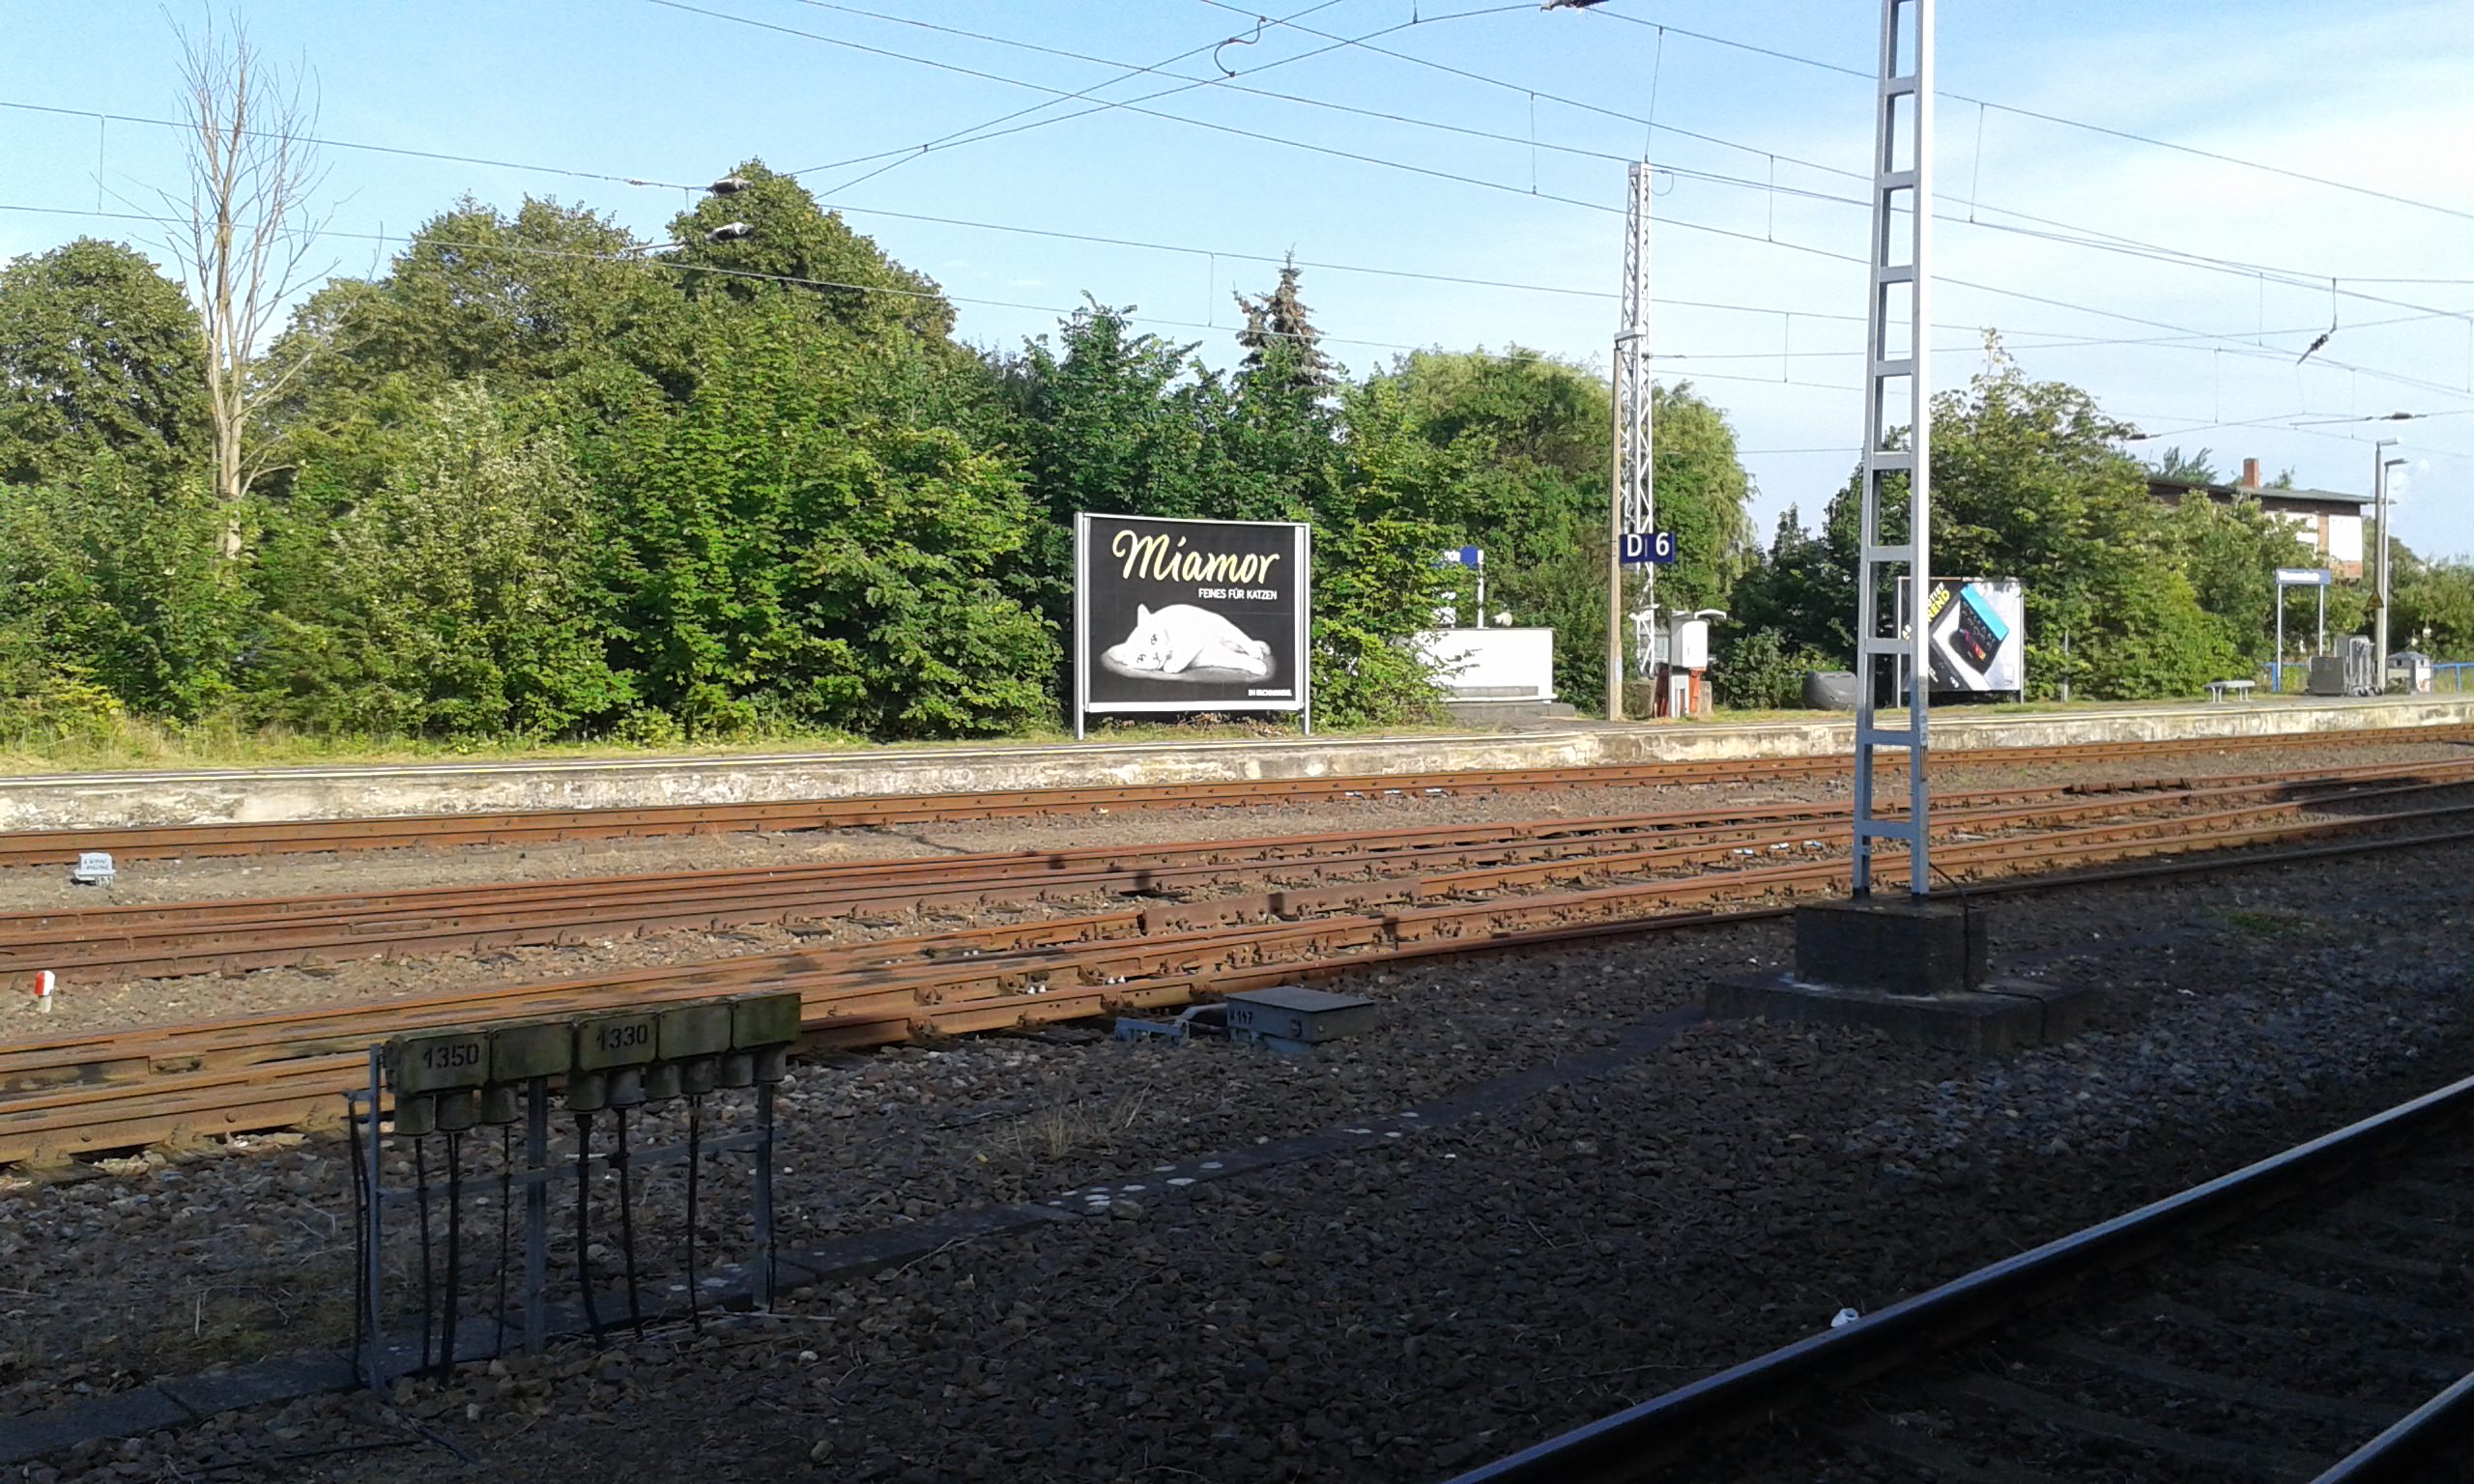 Stillgelegte Bahnanlagen in Warnemünde